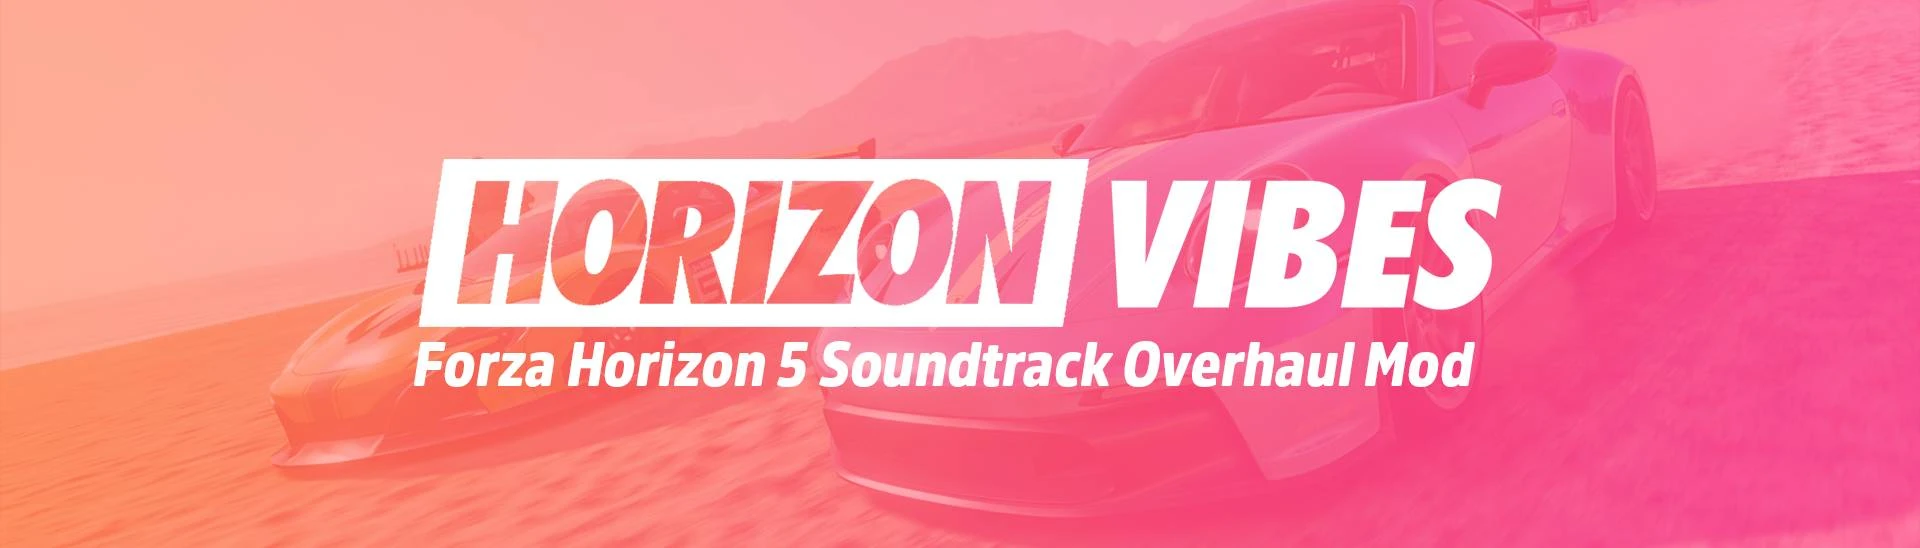 Free Game Alert - Forza Horizon 5 is Free To Play on STEAM, forza horizon  5